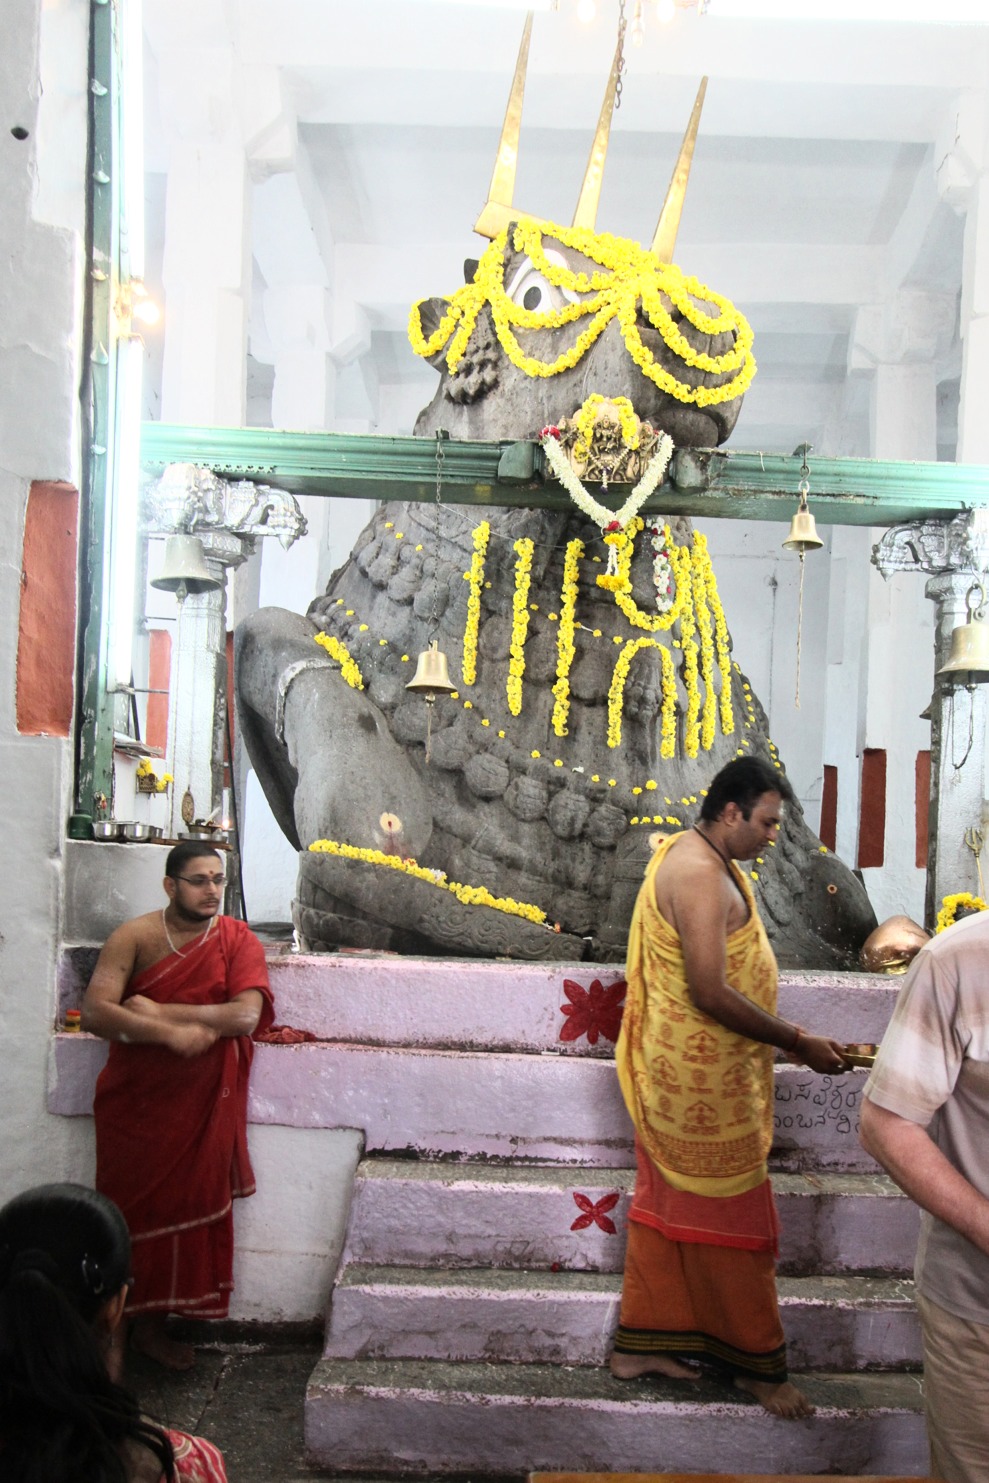 Visit to Bull Temple, Bangalore